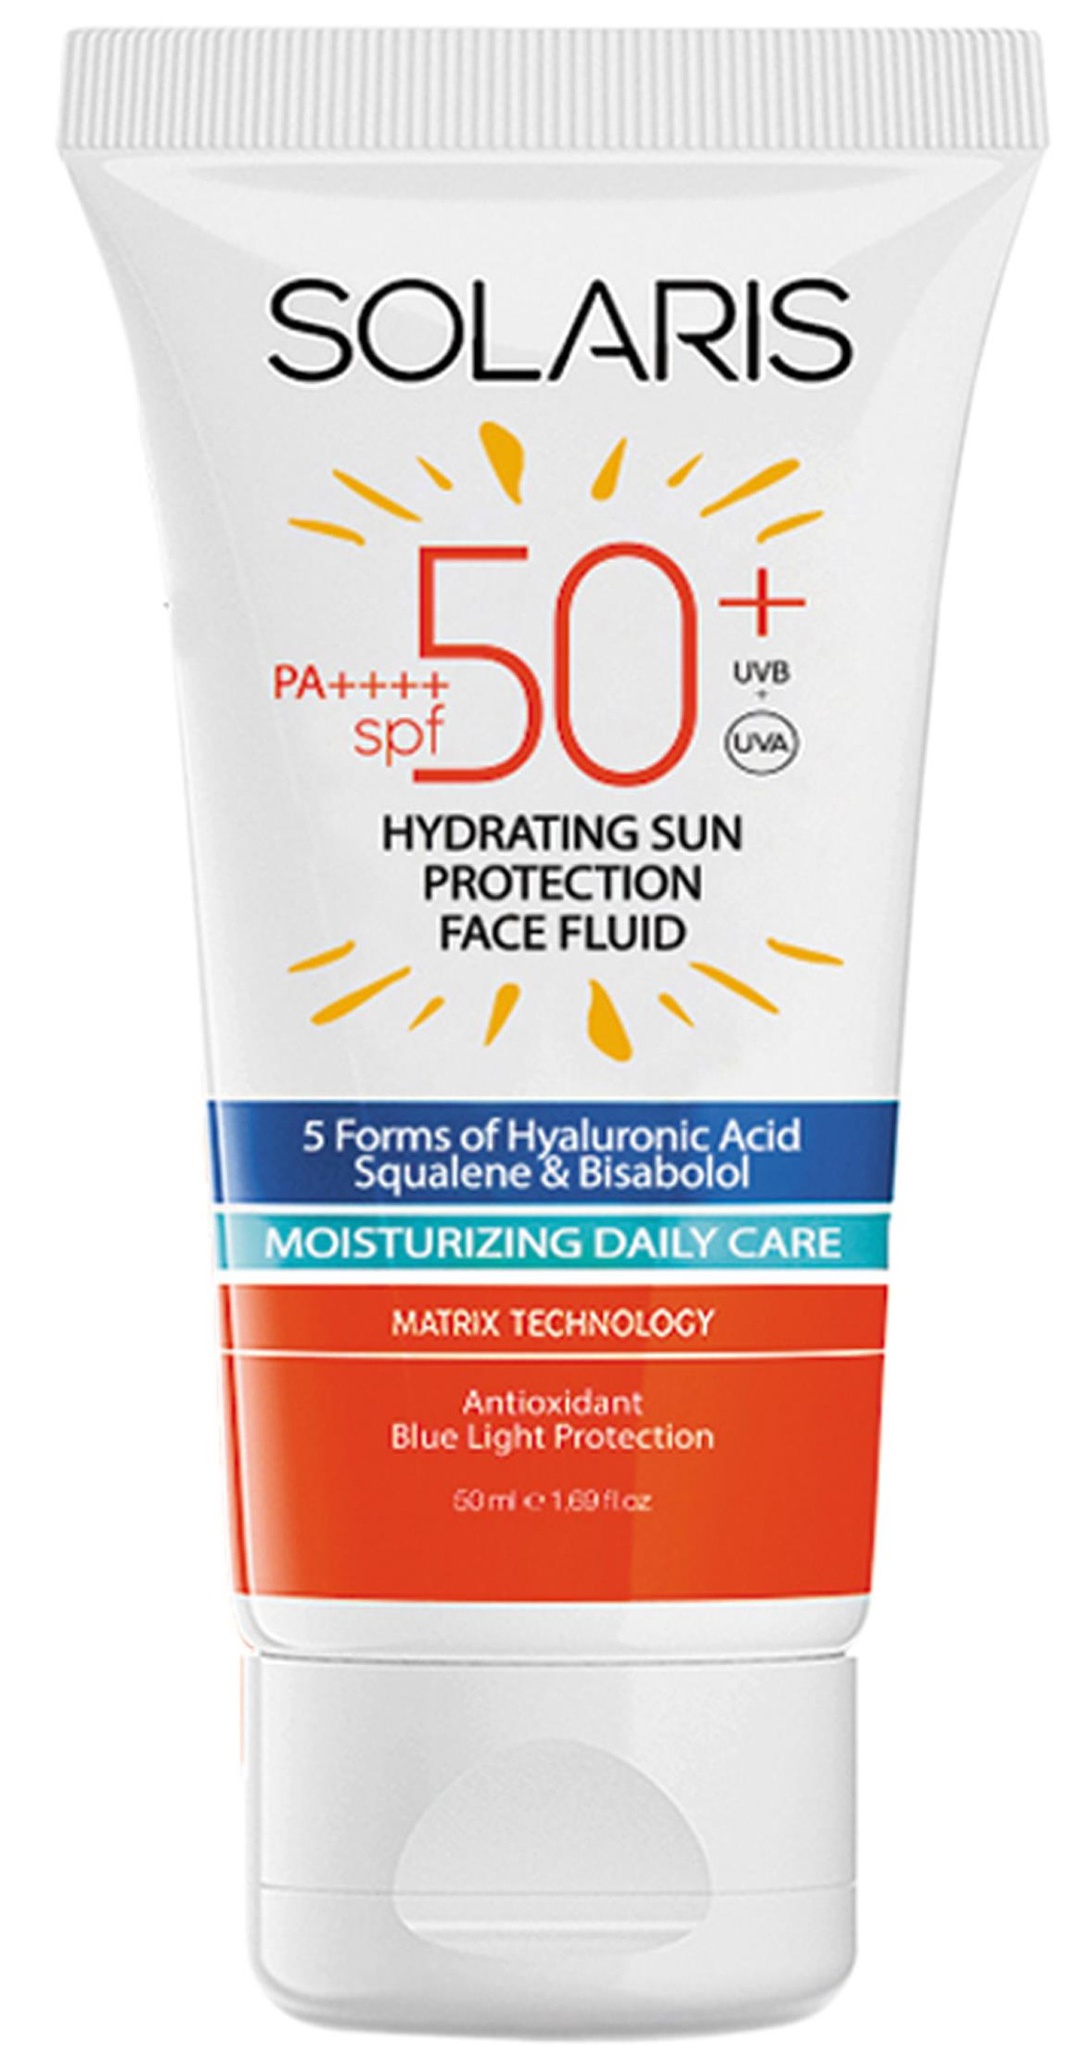 Solaris Hydrating Sun Protection Face Fluid SPF 50+